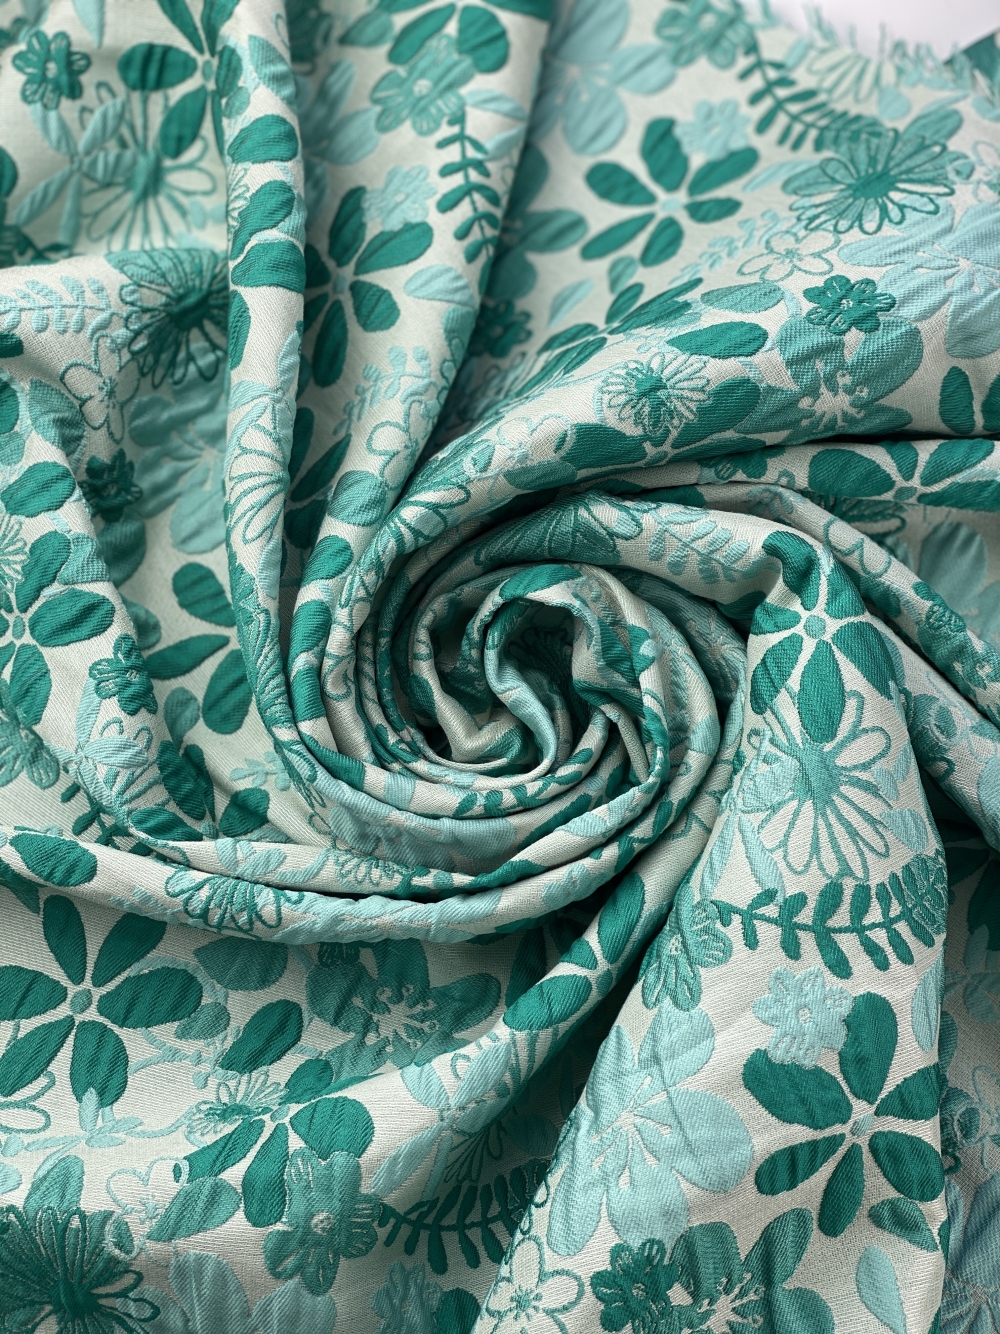 EM-MondRoseBrocade3054-Ivory-M Textured Rose Stretch Brocade Dress Fabric 